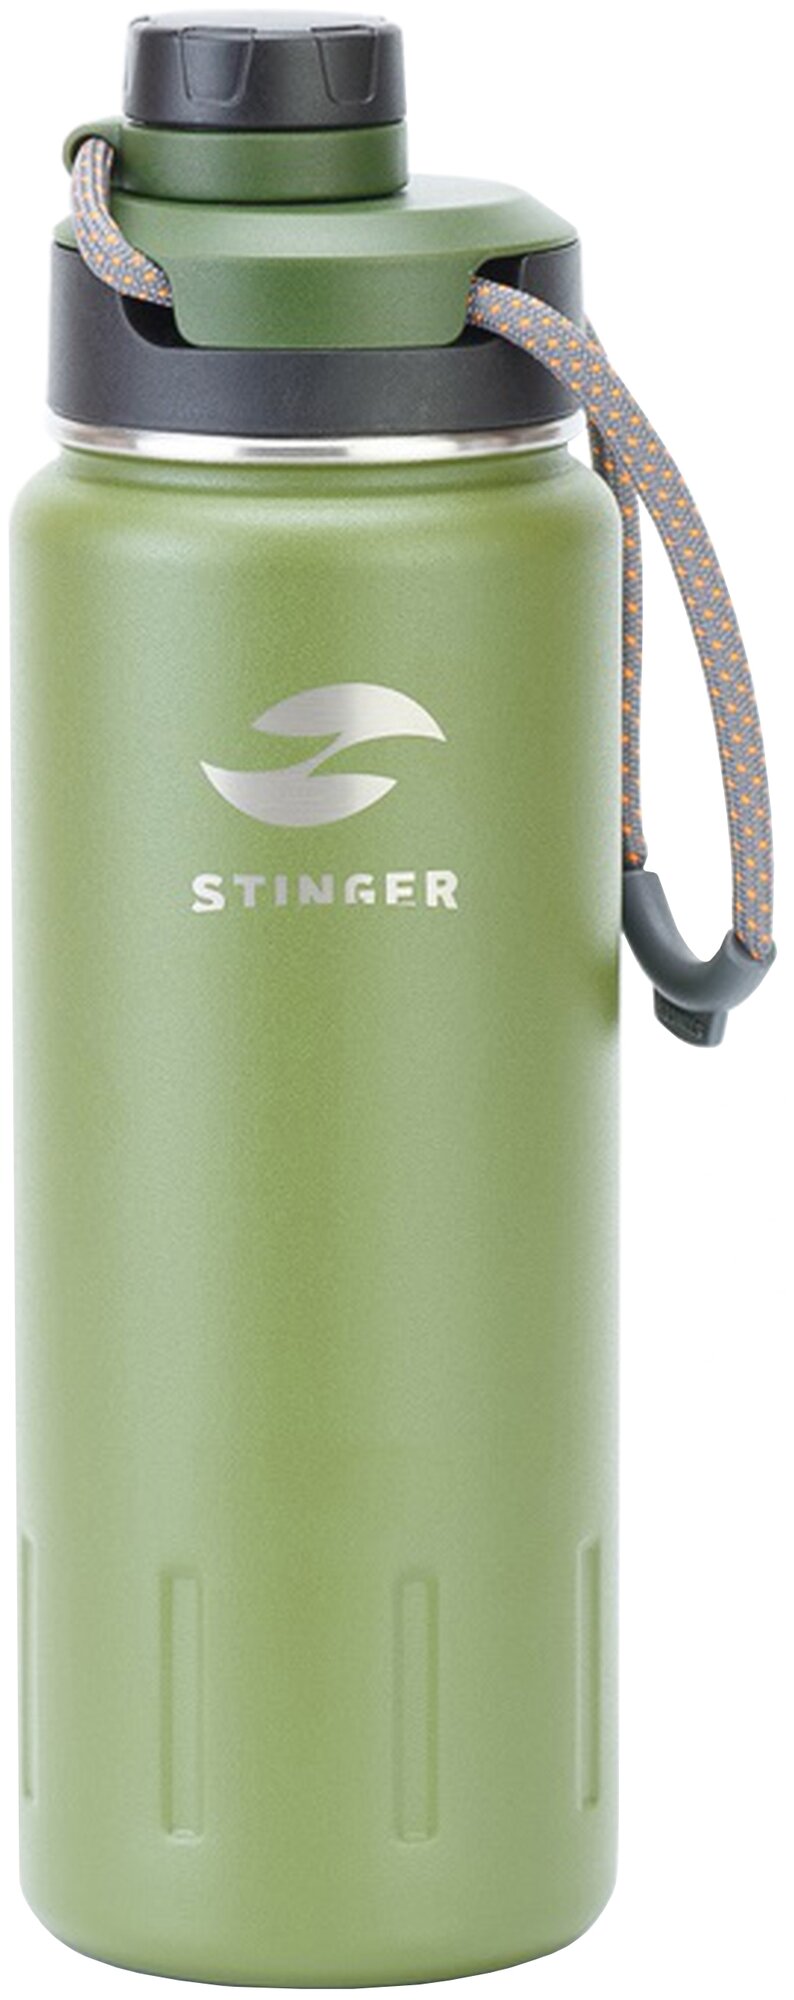 Термобутылка Stinger для горячих и холодных напитков, 0,71 л, сталь/пластик, цвет зеленый мох (HD-710-46MG)